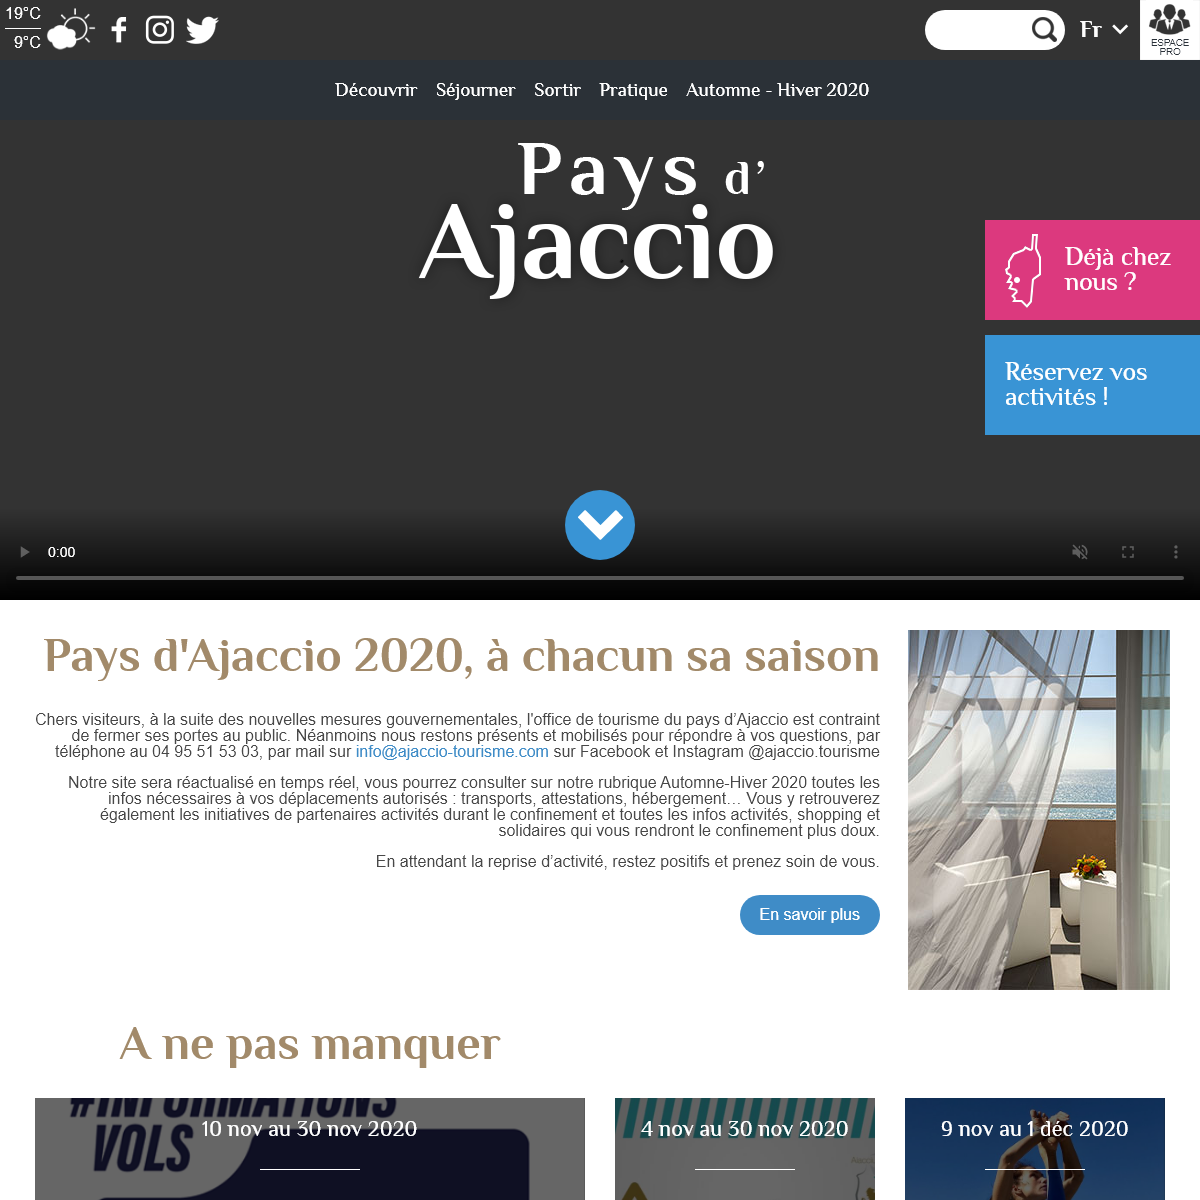 A complete backup of ajaccio-tourisme.com